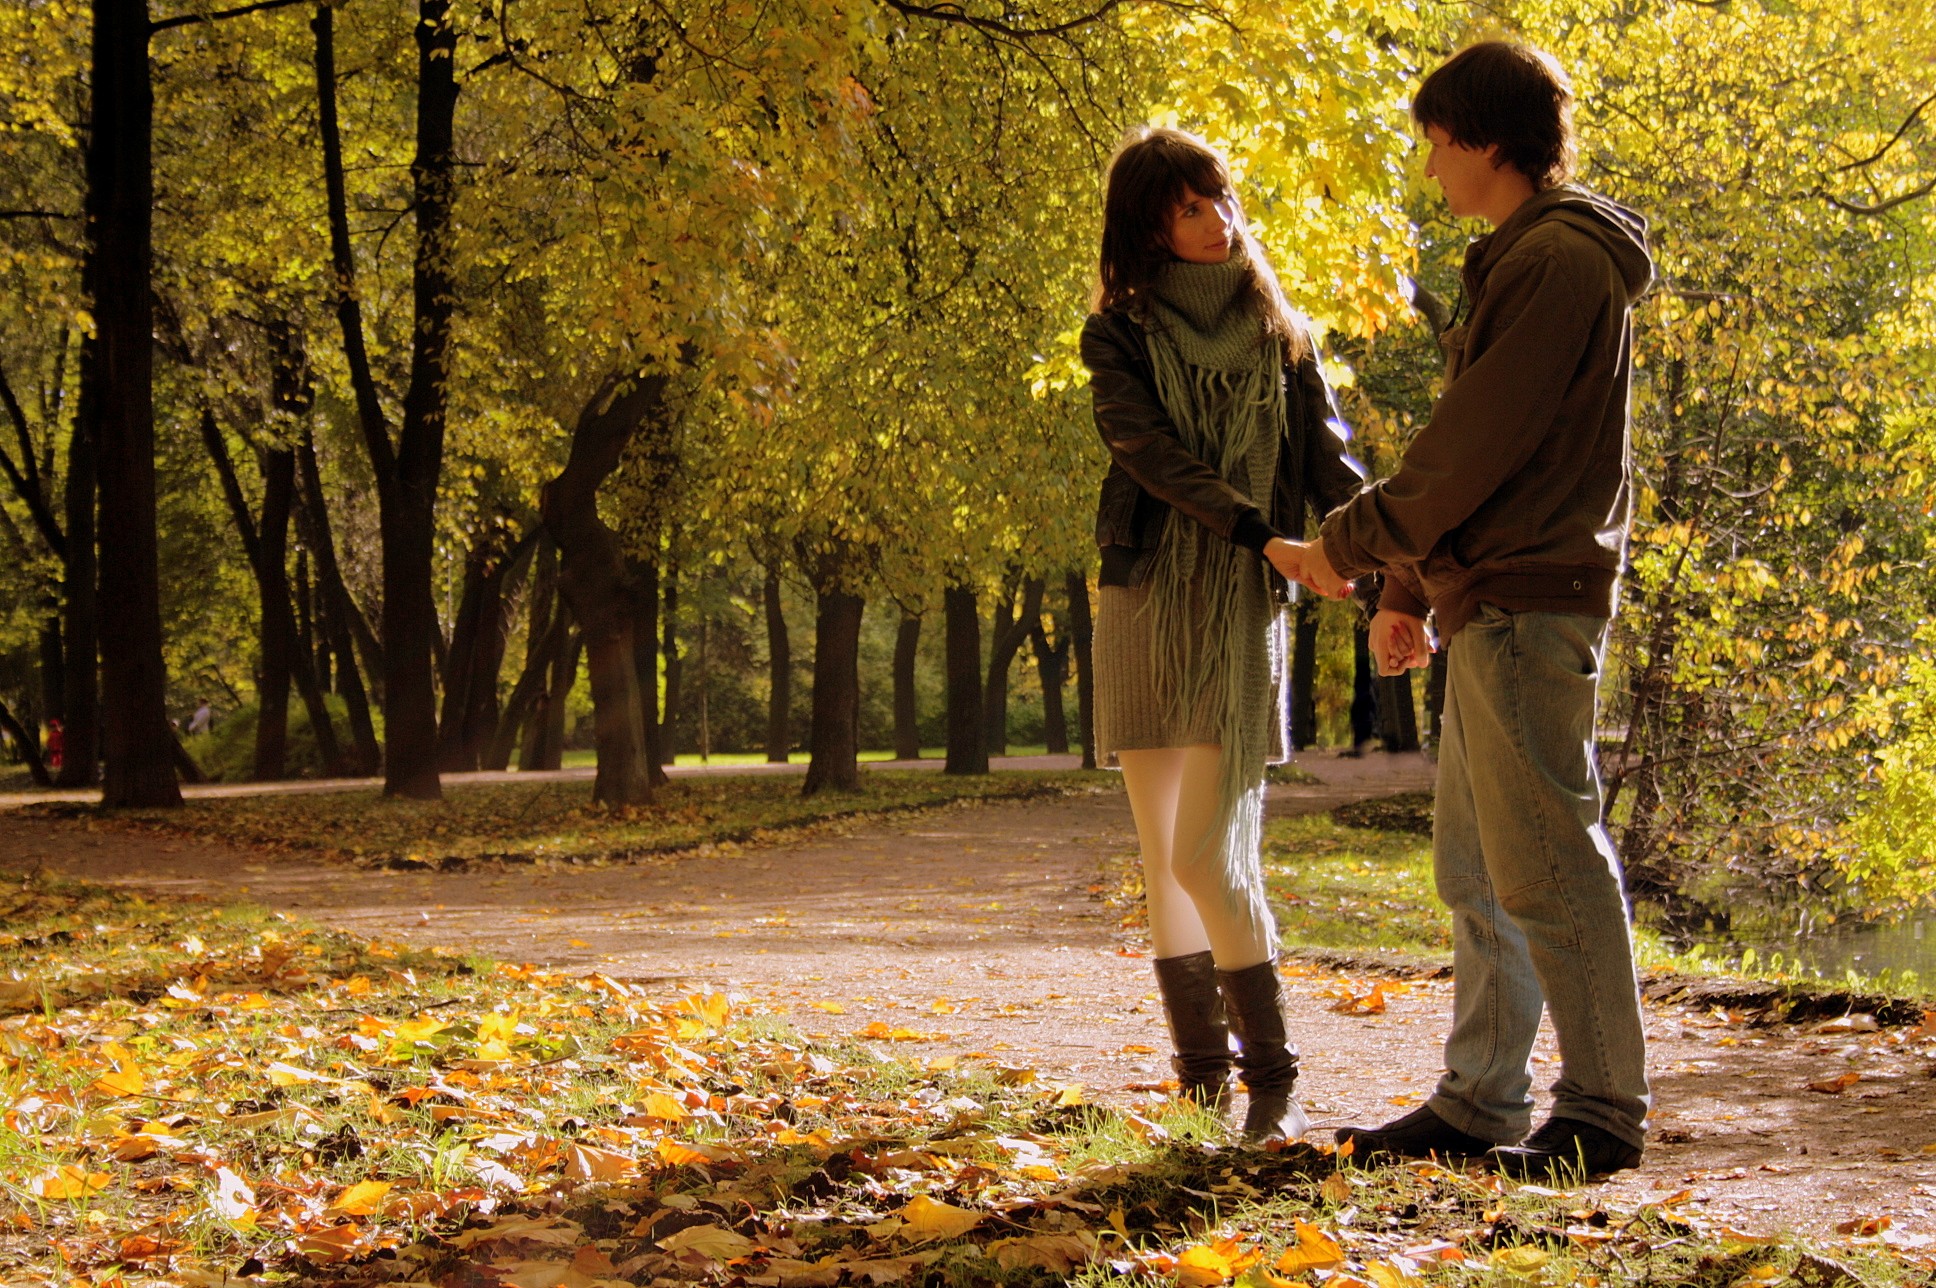 Тем вечером мы встретились. Парень и девушка в парке осенью. Прогулка в осеннем парке. Осень в парке. Парень с девушкой в осеннем парке.